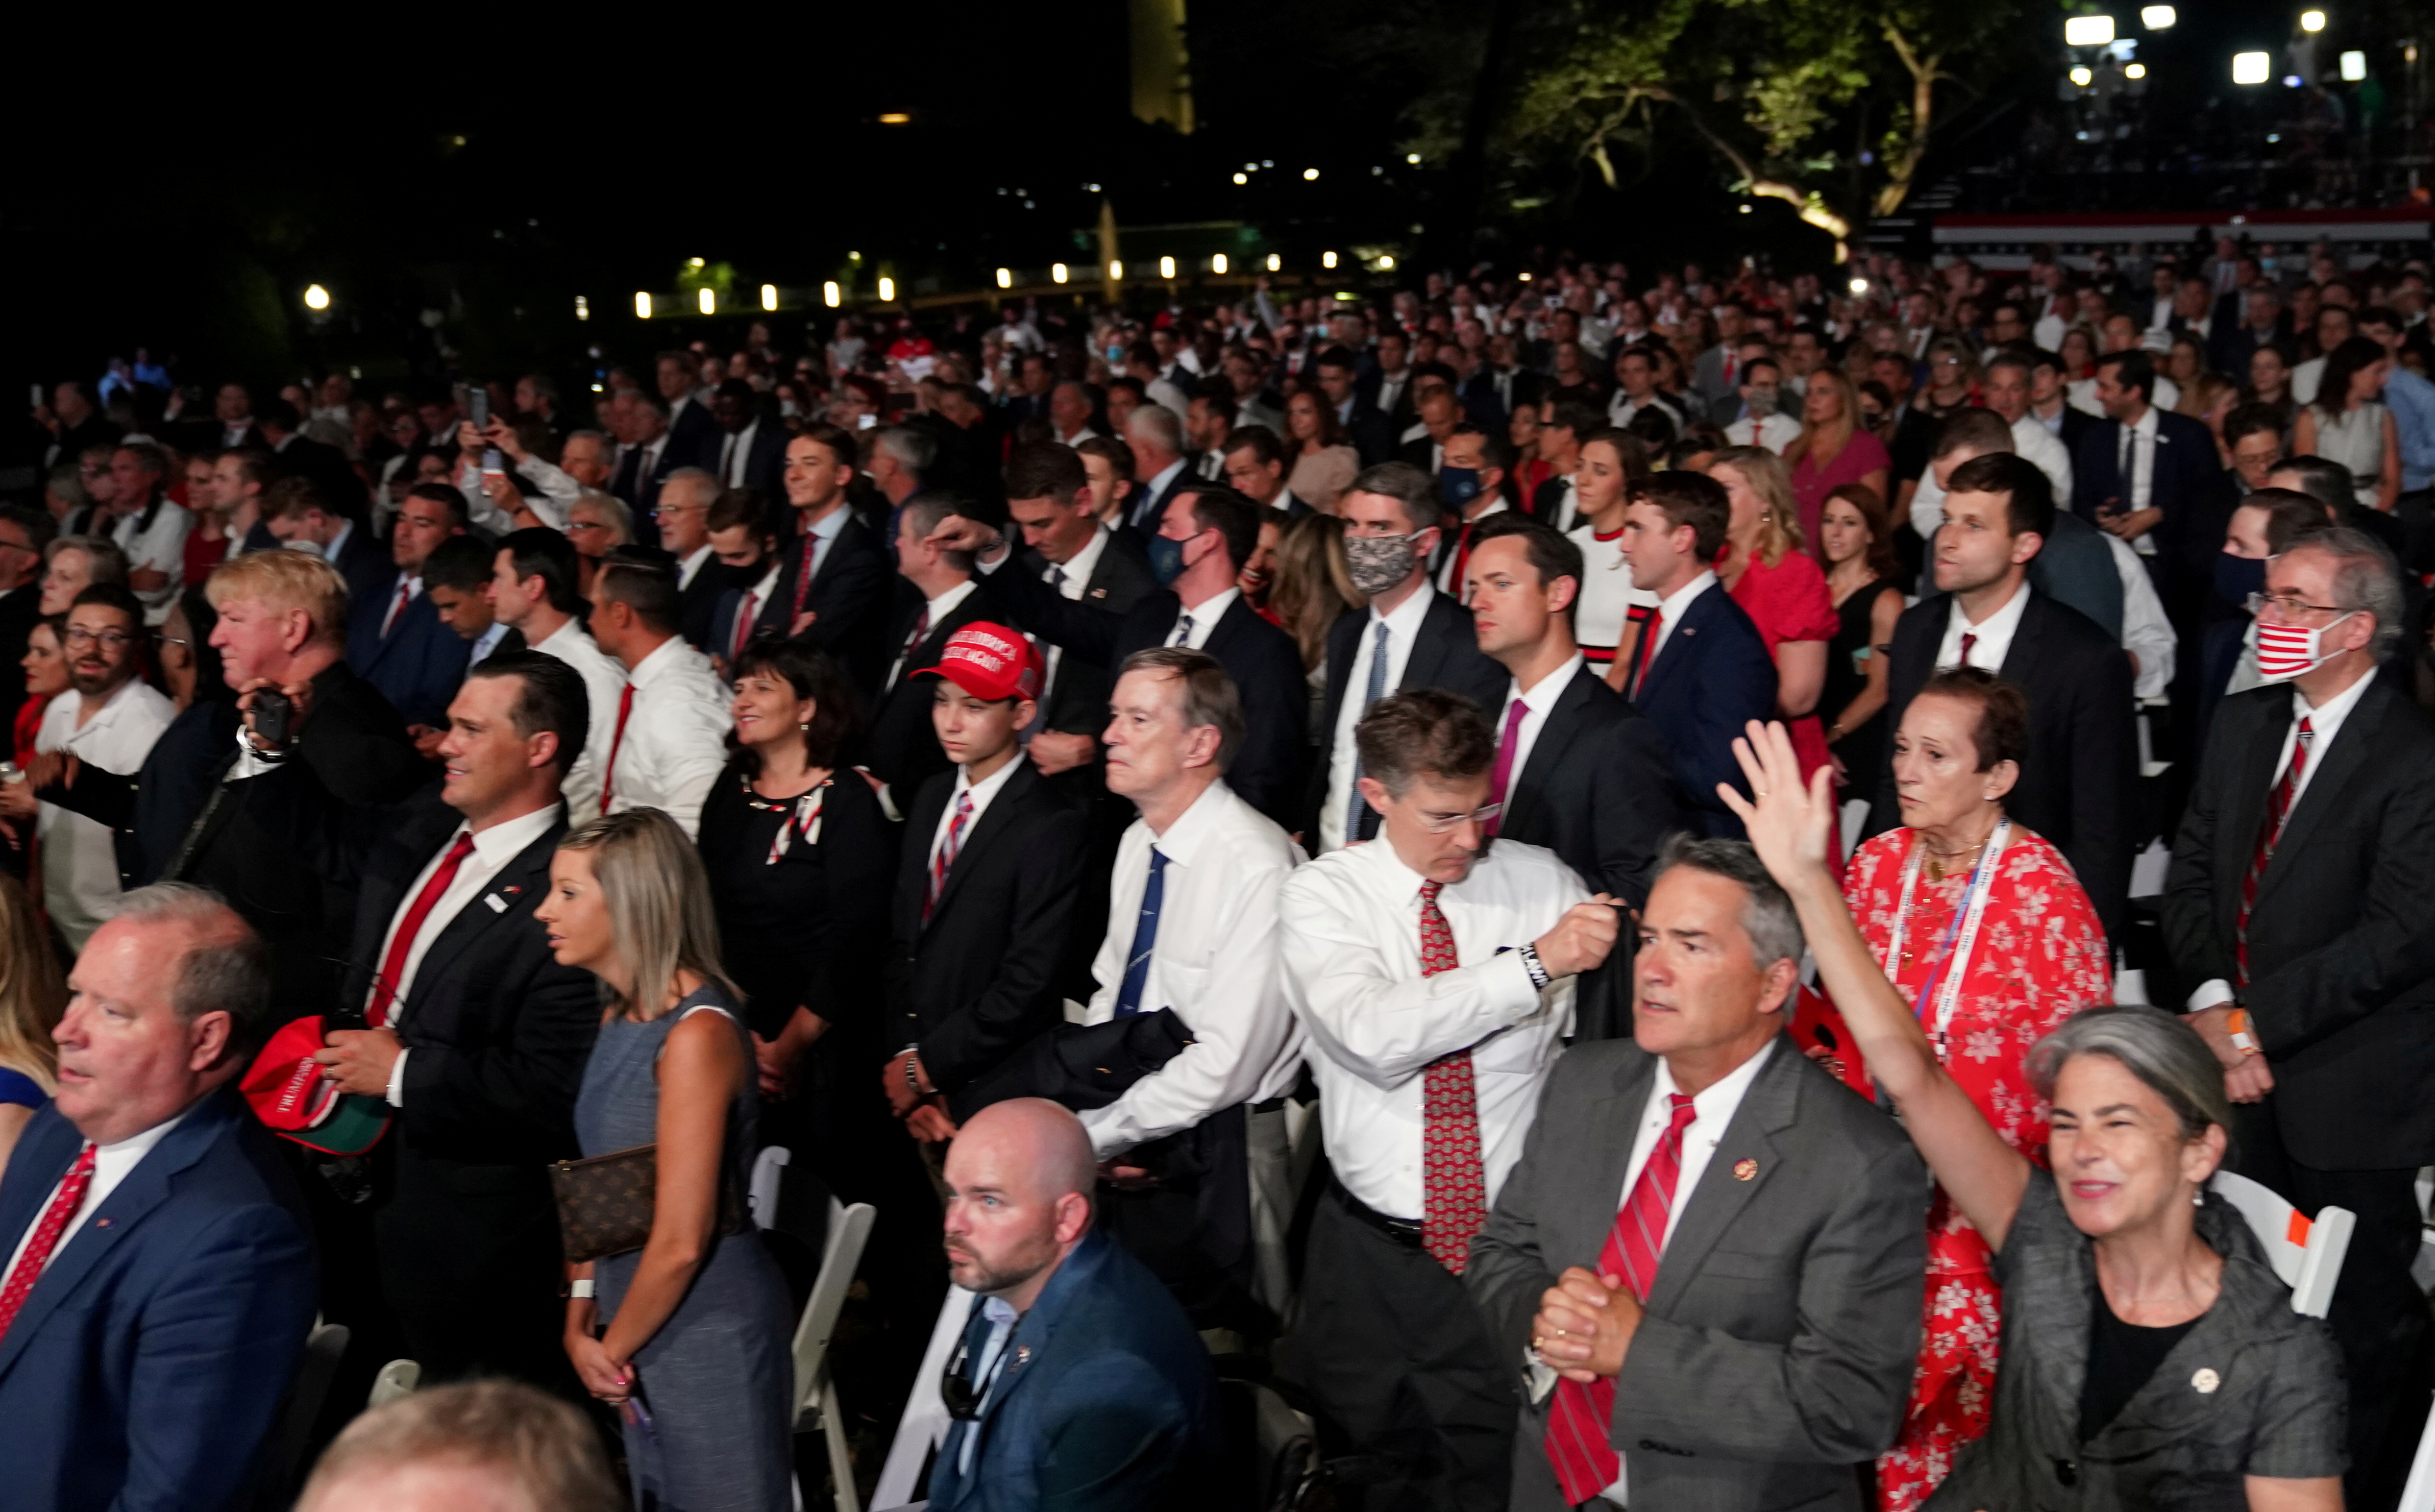 El público asistente al discurso de Trump en los jardines de la Casa Blanca. REUTERS/Kevin Lamarque     TPX IMAGES OF THE DAY